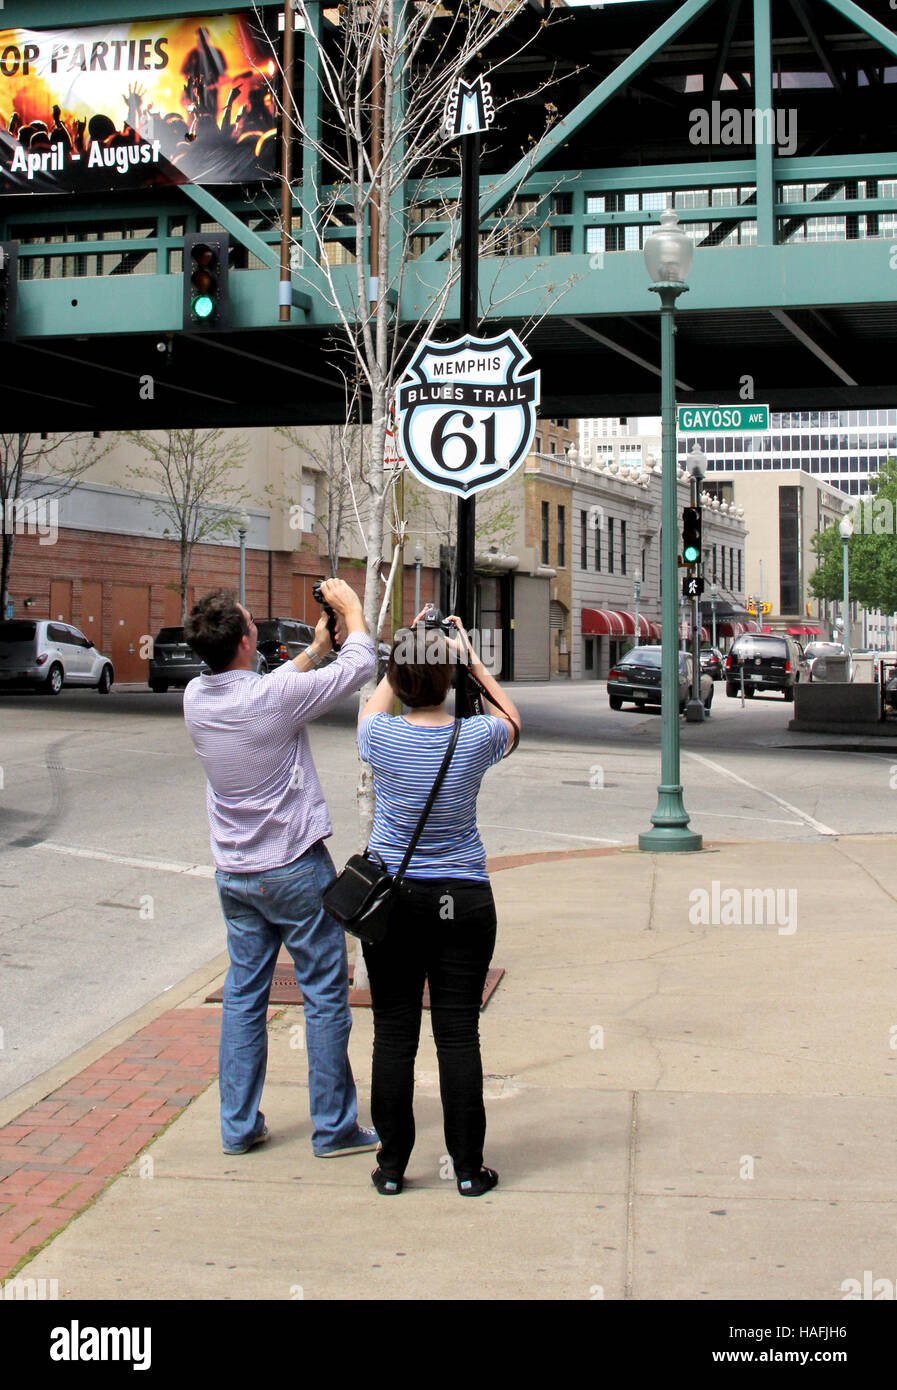 Les touristes de prendre une photo de la Route 61 (signe Memphis Blues Trail) à Memphis, Tennessee Banque D'Images